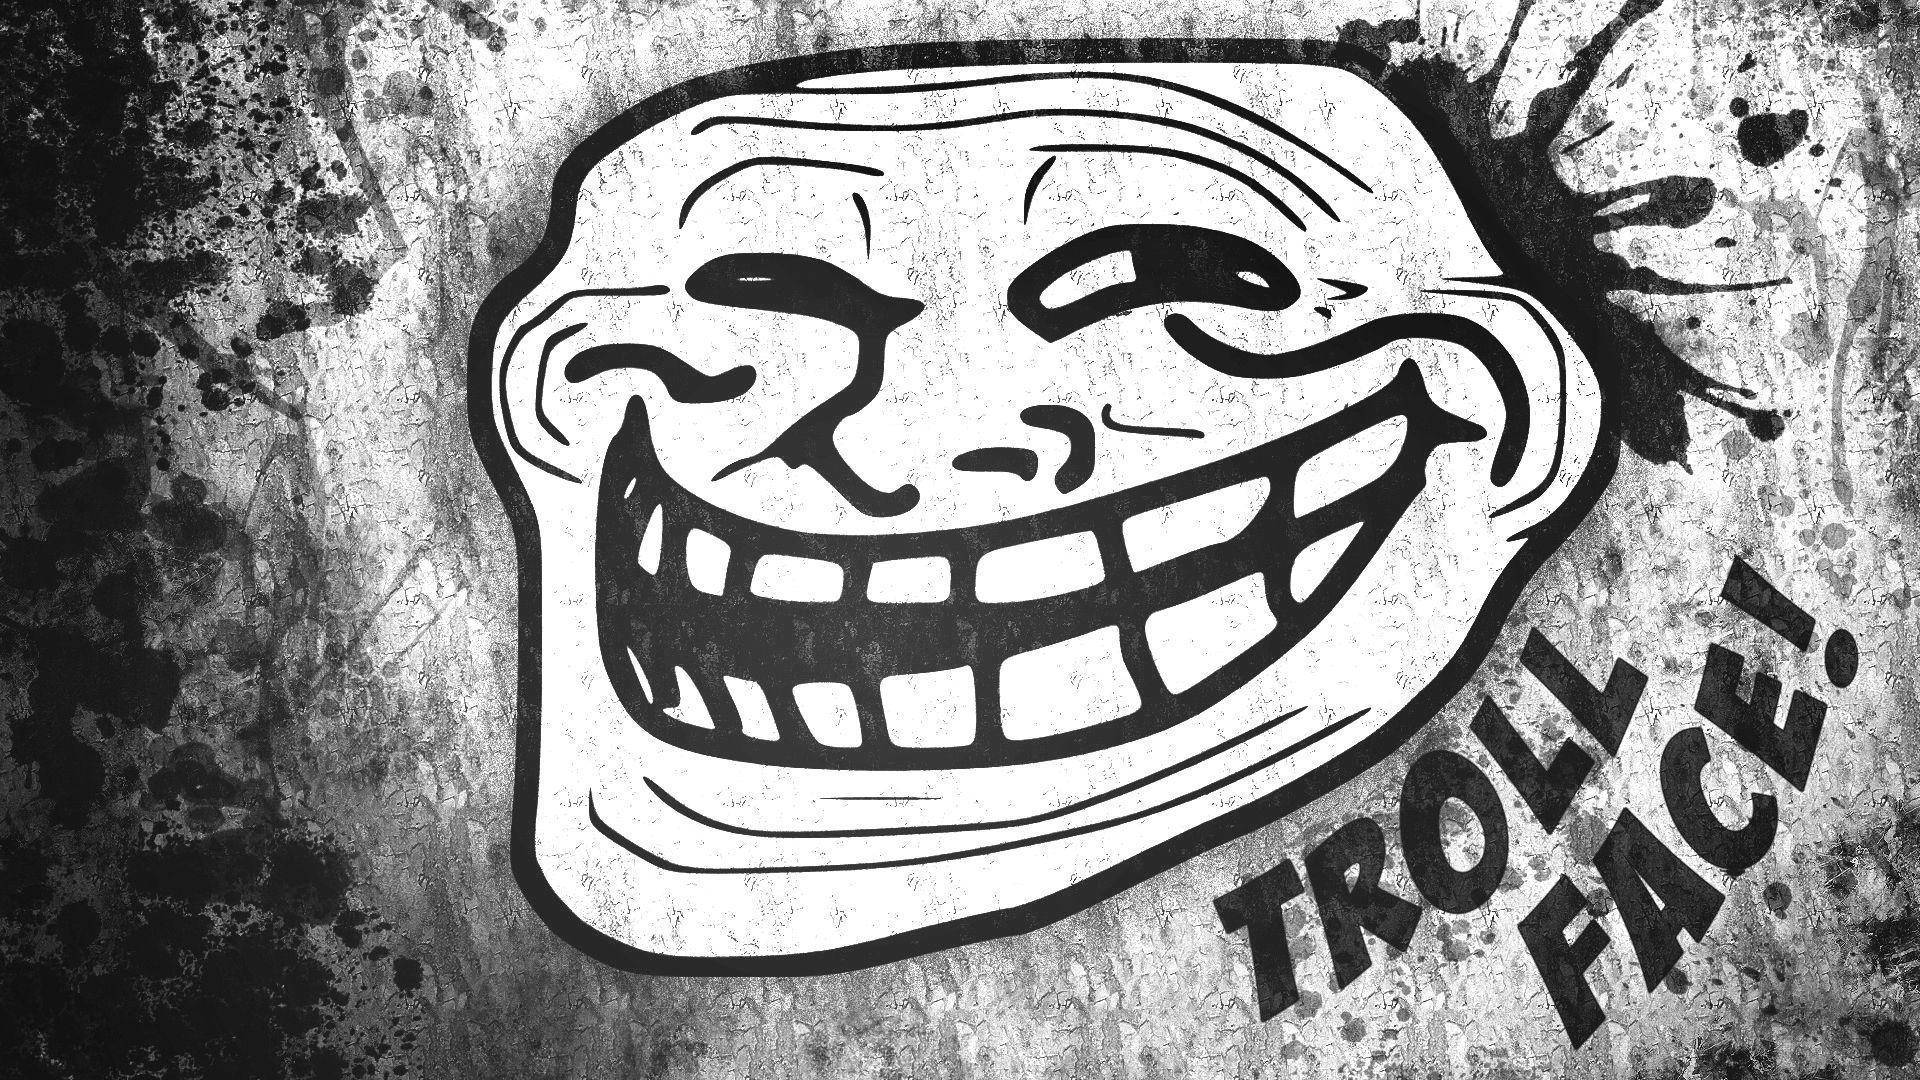 Just Keep Trollin'